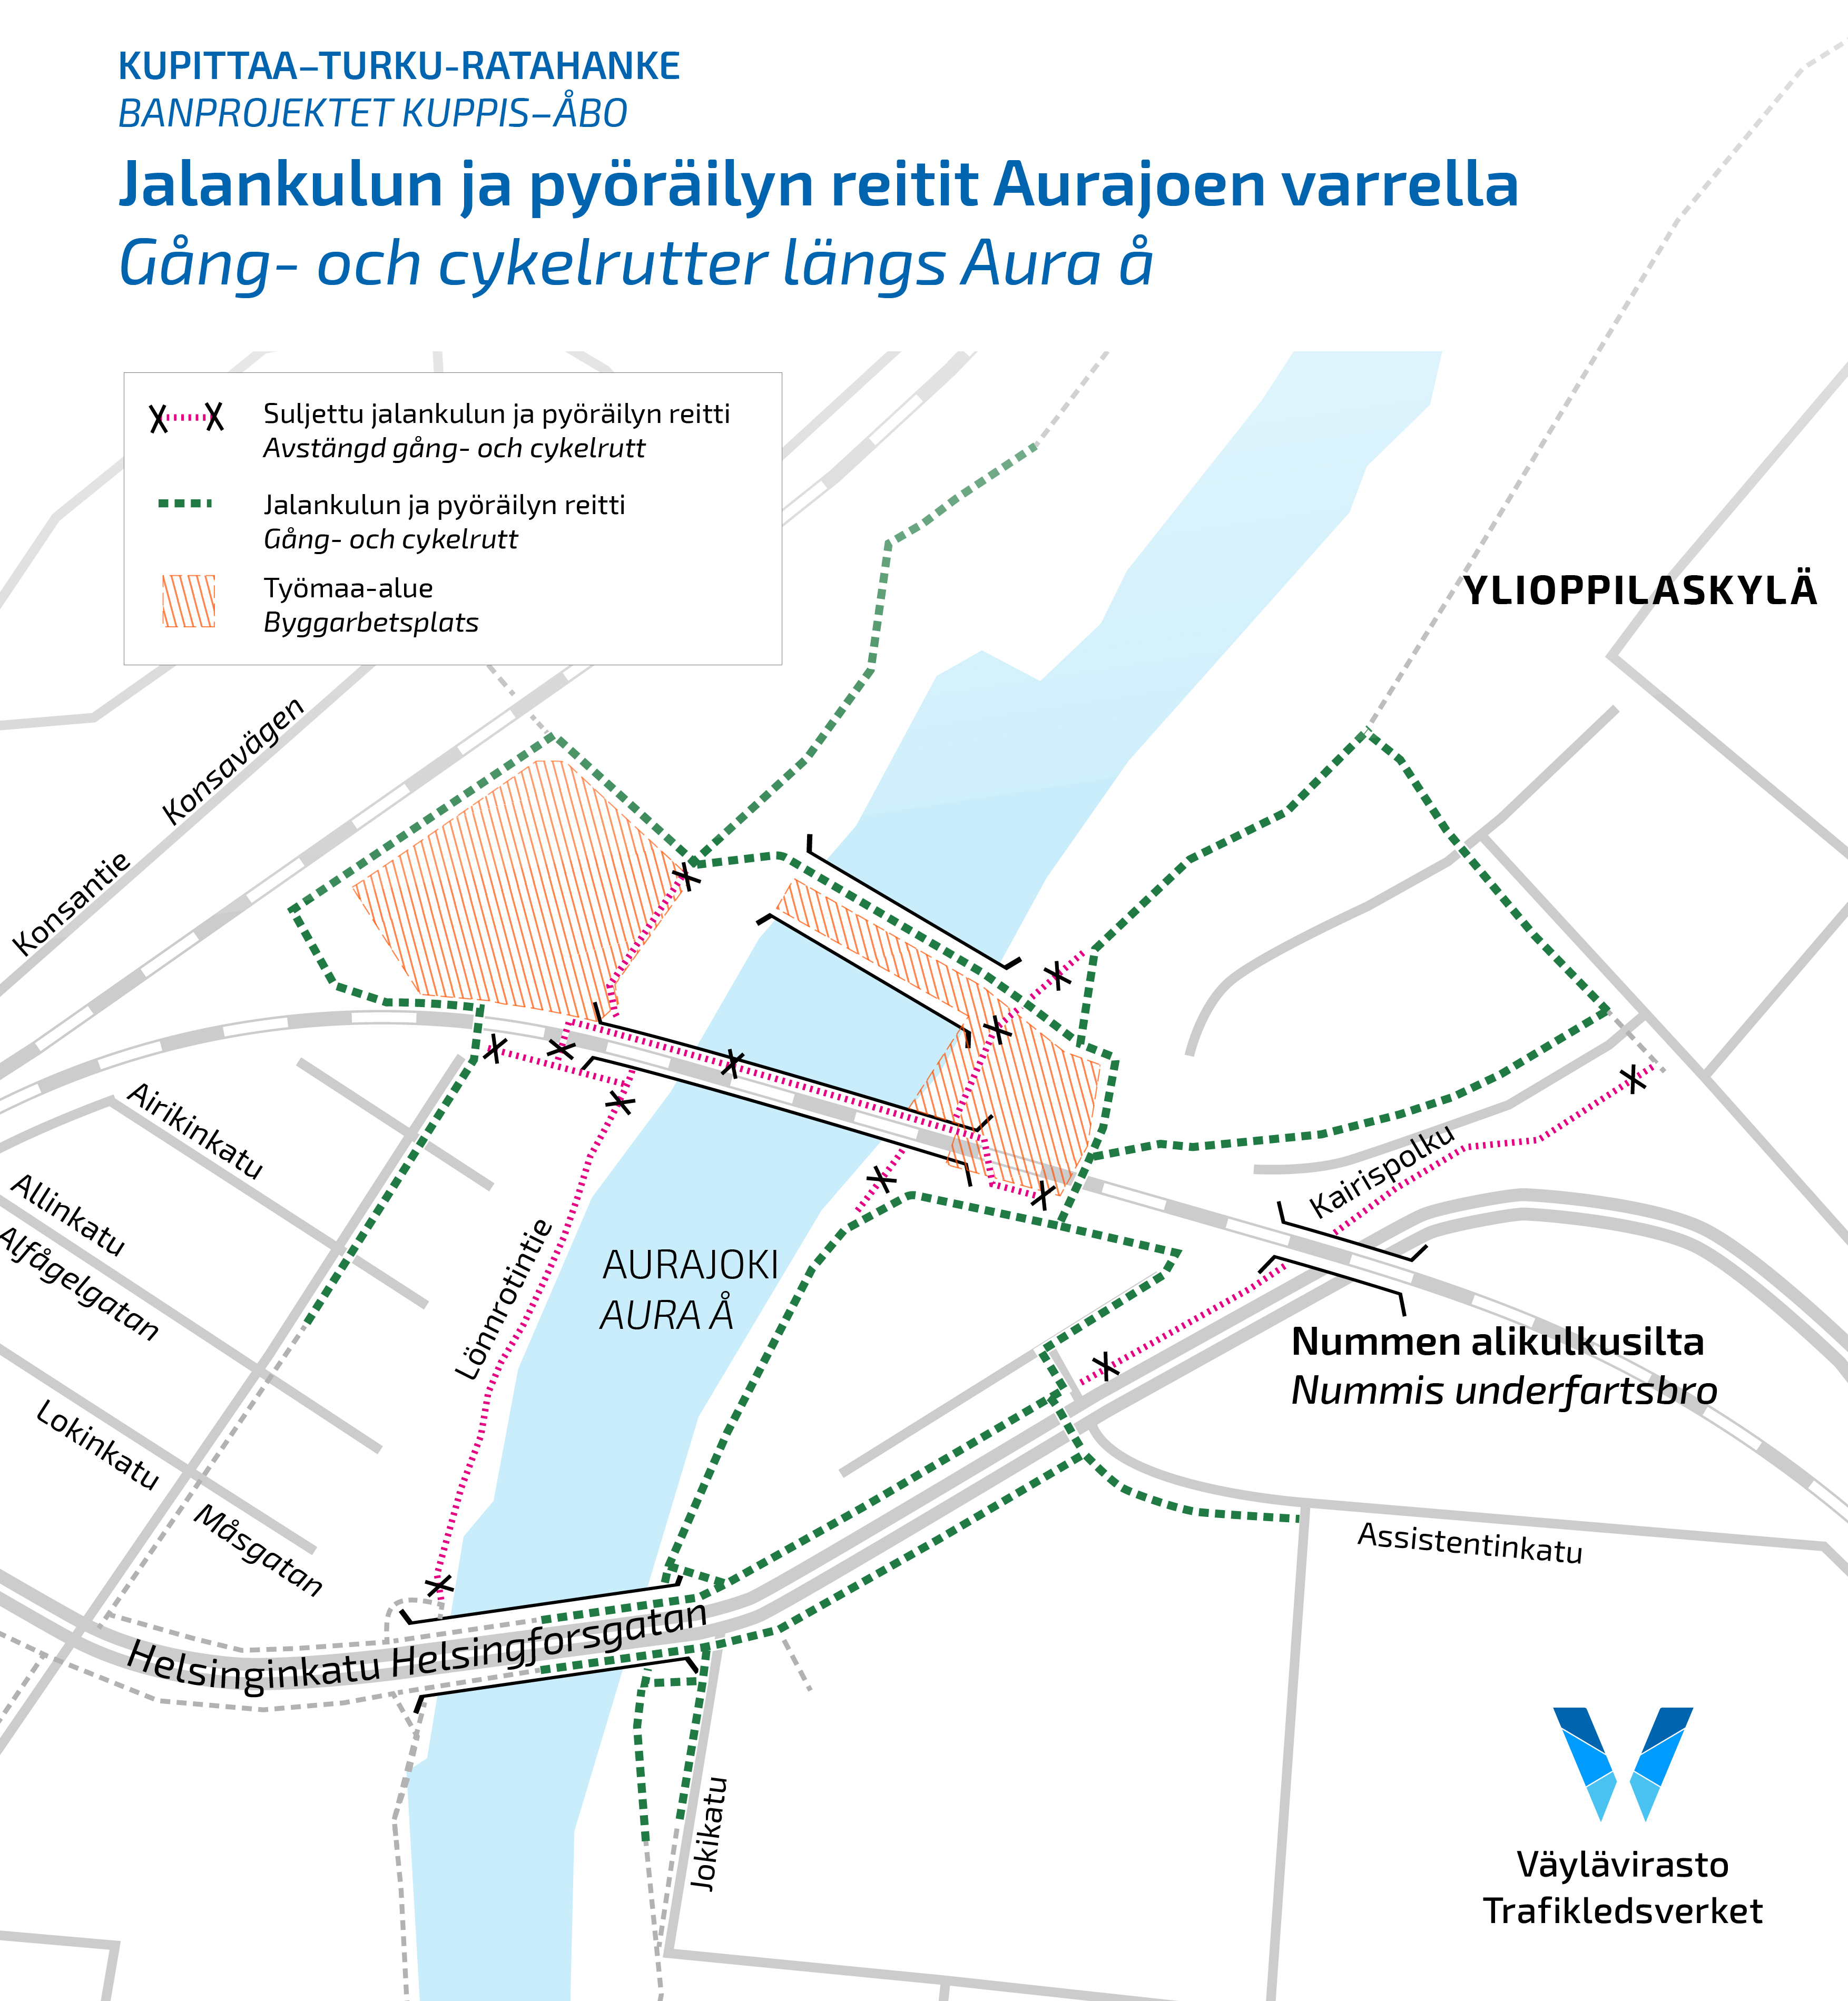 Kartta jalankulun ja pyöräilyn reiteistä Aurajoen varrella. Kairispolku on suljettu välillä Pispalantie-Assistentinkatu, ja Jalankulun ja pyöräilyn kiertoreitti kulkee Nummenrannassa Helsinginkadun, Aurajoenrannan ulkoilupolun sekä rautatien myötäisesti.